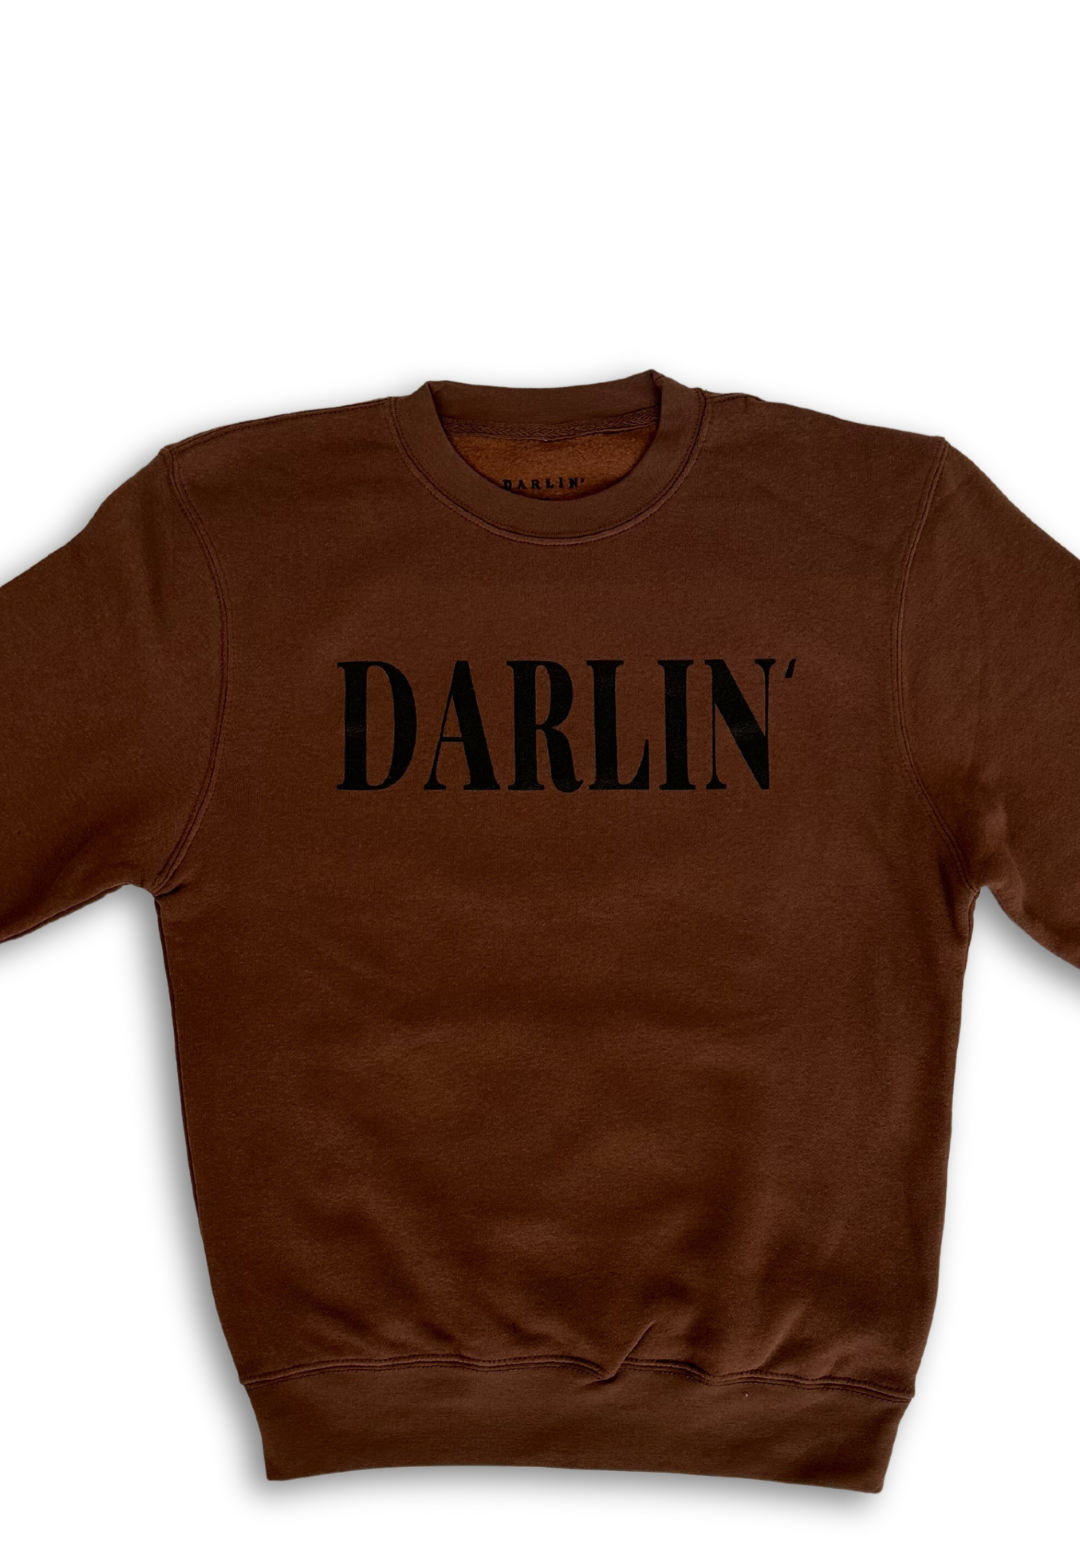 DARLIN' crewneck Brown